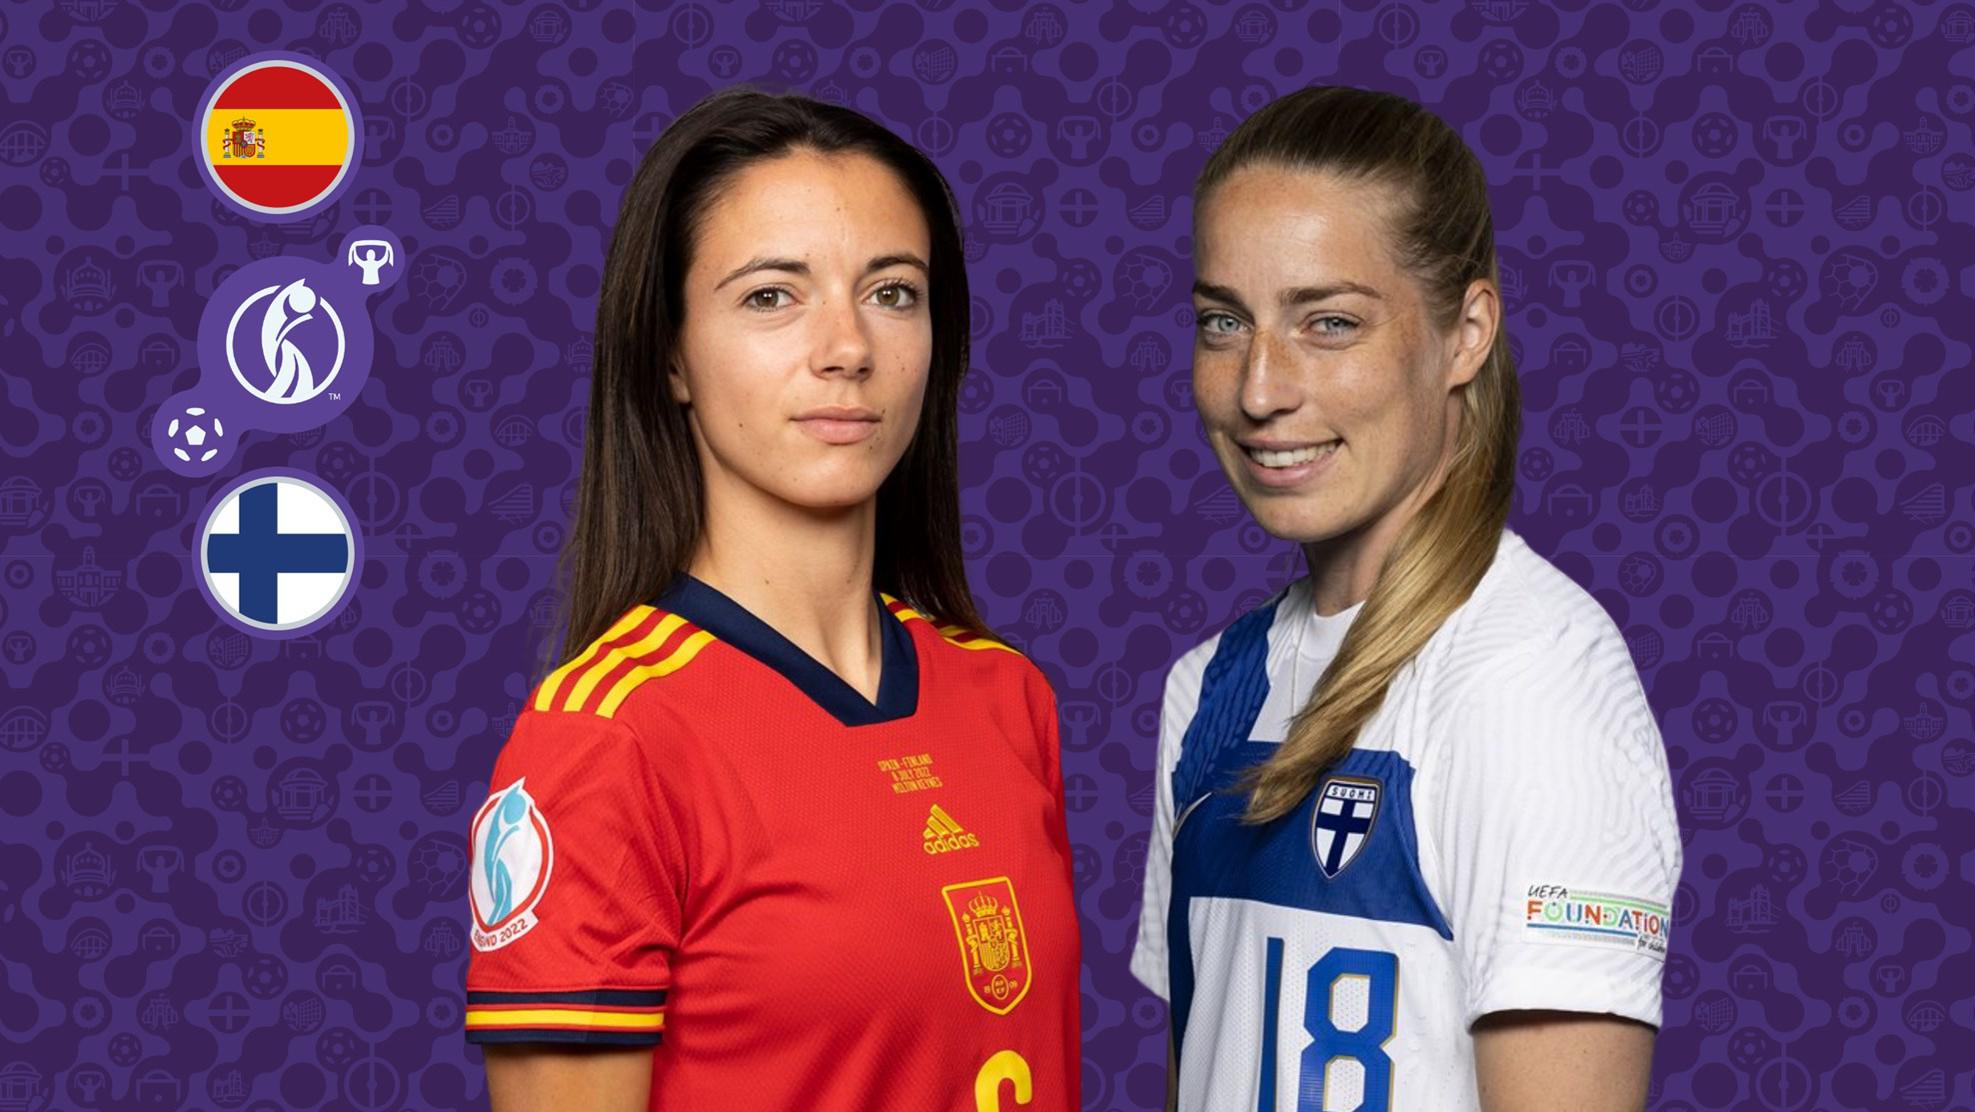 Previa de la Eurocopa Femenina España vs Finlandia: dónde verlo, hora de inicio, alineaciones previstas |  Eurocopa Femenina de la UEFA